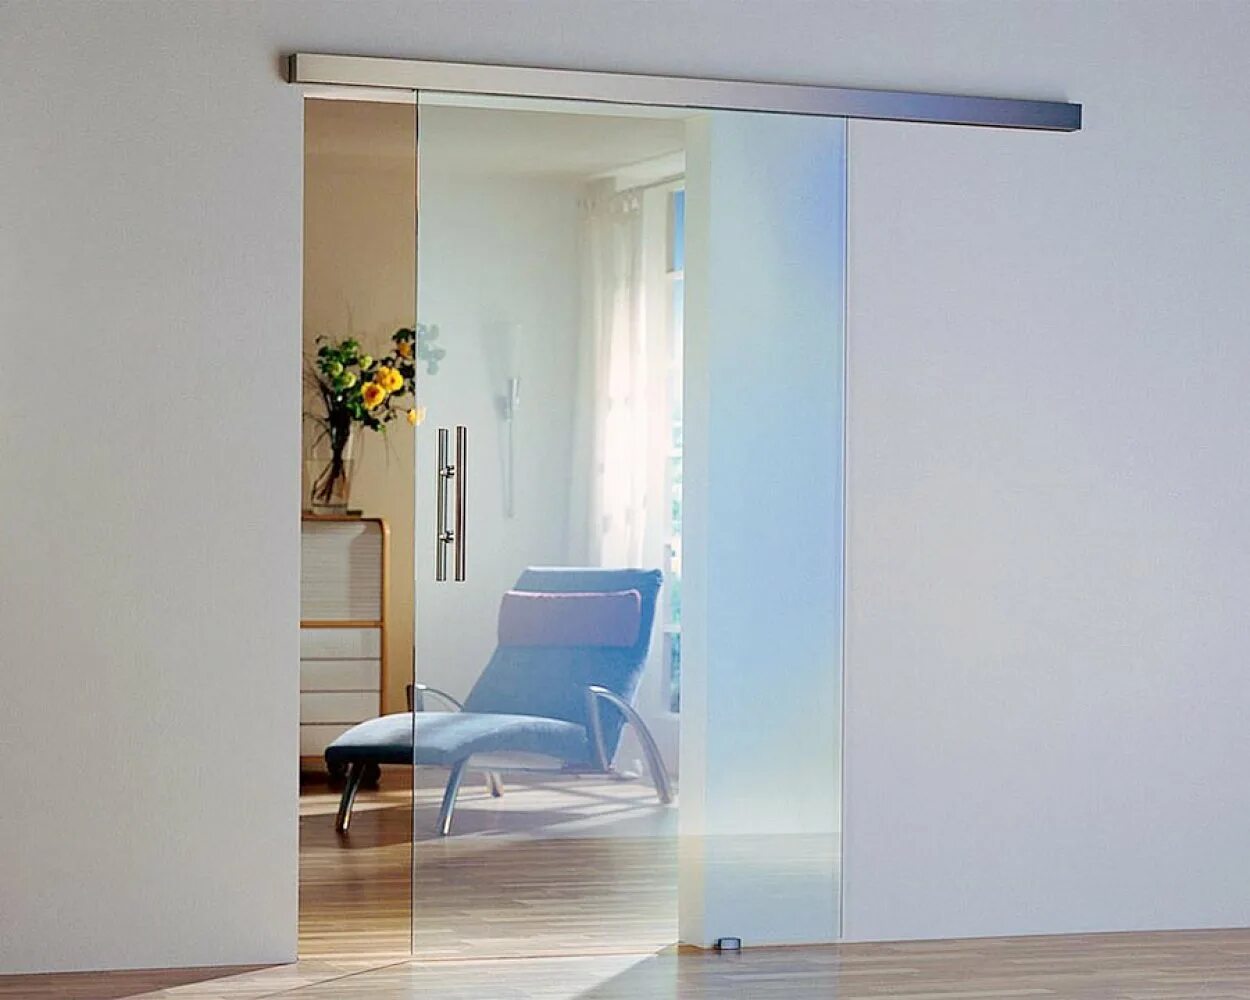 Dorma Agile 150. W-001/Air Glass. Раздвижная система цельностеклянная. Раздвижные перегородки estet. Стеклянная дверь в квартире